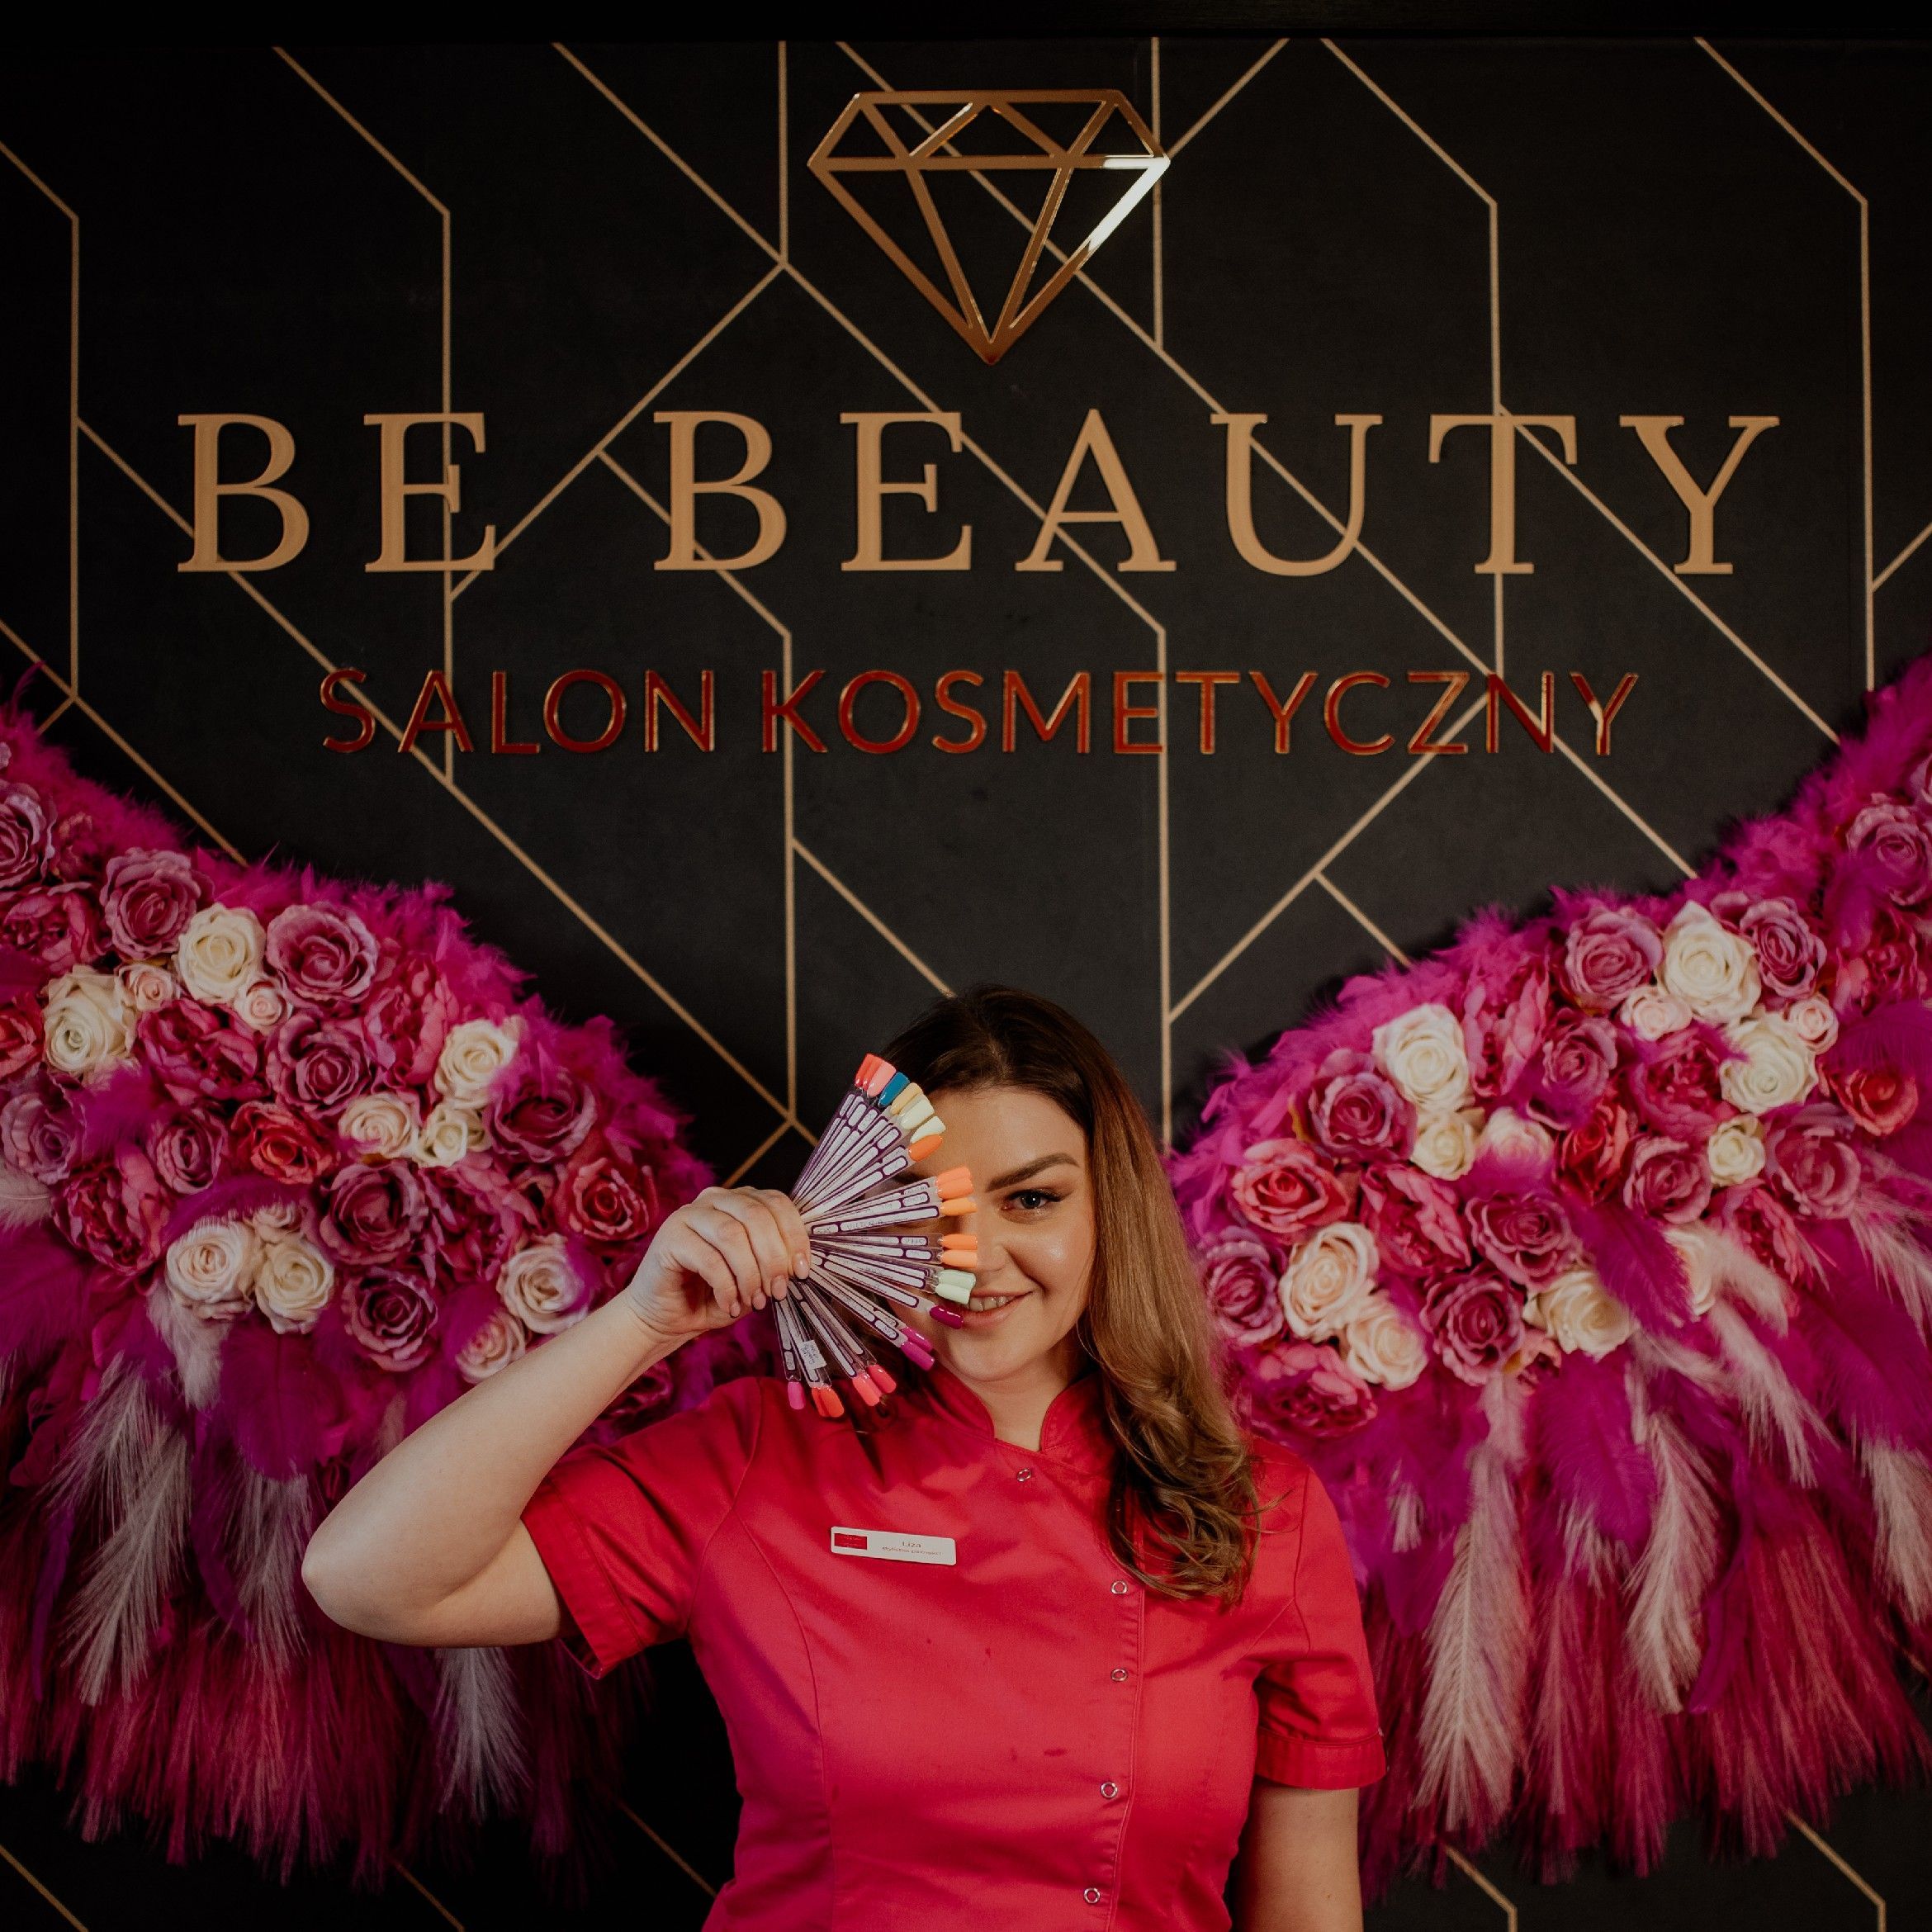 Liza 💎 - Be Beauty Salon Kosmetyczny